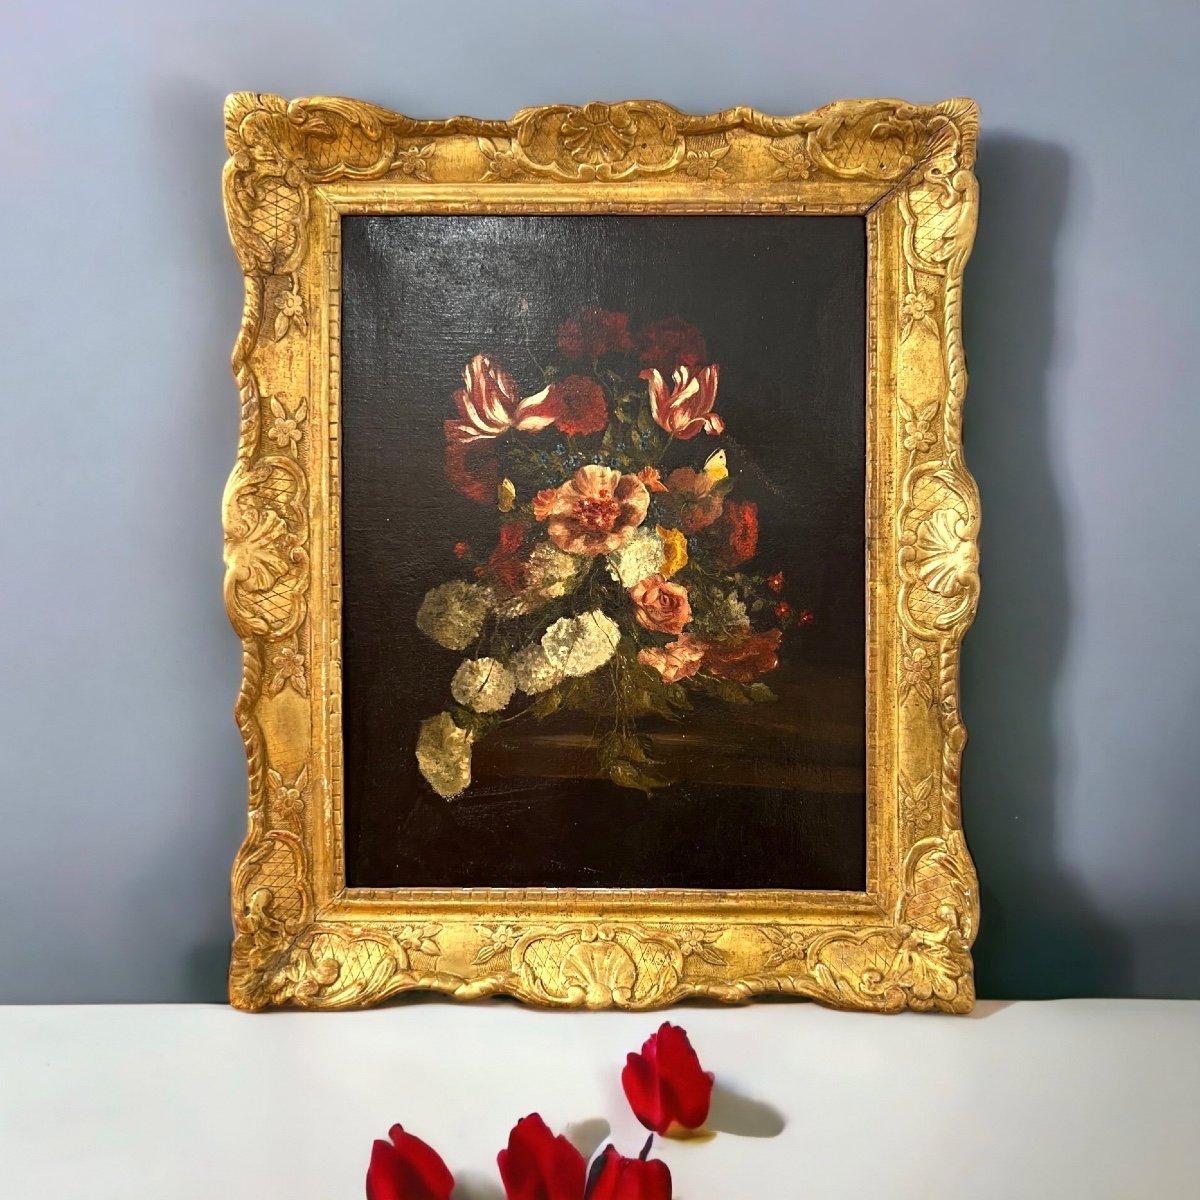 Wir präsentieren Ihnen dieses Ölgemälde auf Leinwand, das ein raffiniertes Blumenarrangement in leuchtenden Farben vor einem tiefdunklen Hintergrund in einem prächtigen vergoldeten Rahmen aus dem 19. Jahrhundert darstellt. Der Rahmen ist mit zarten